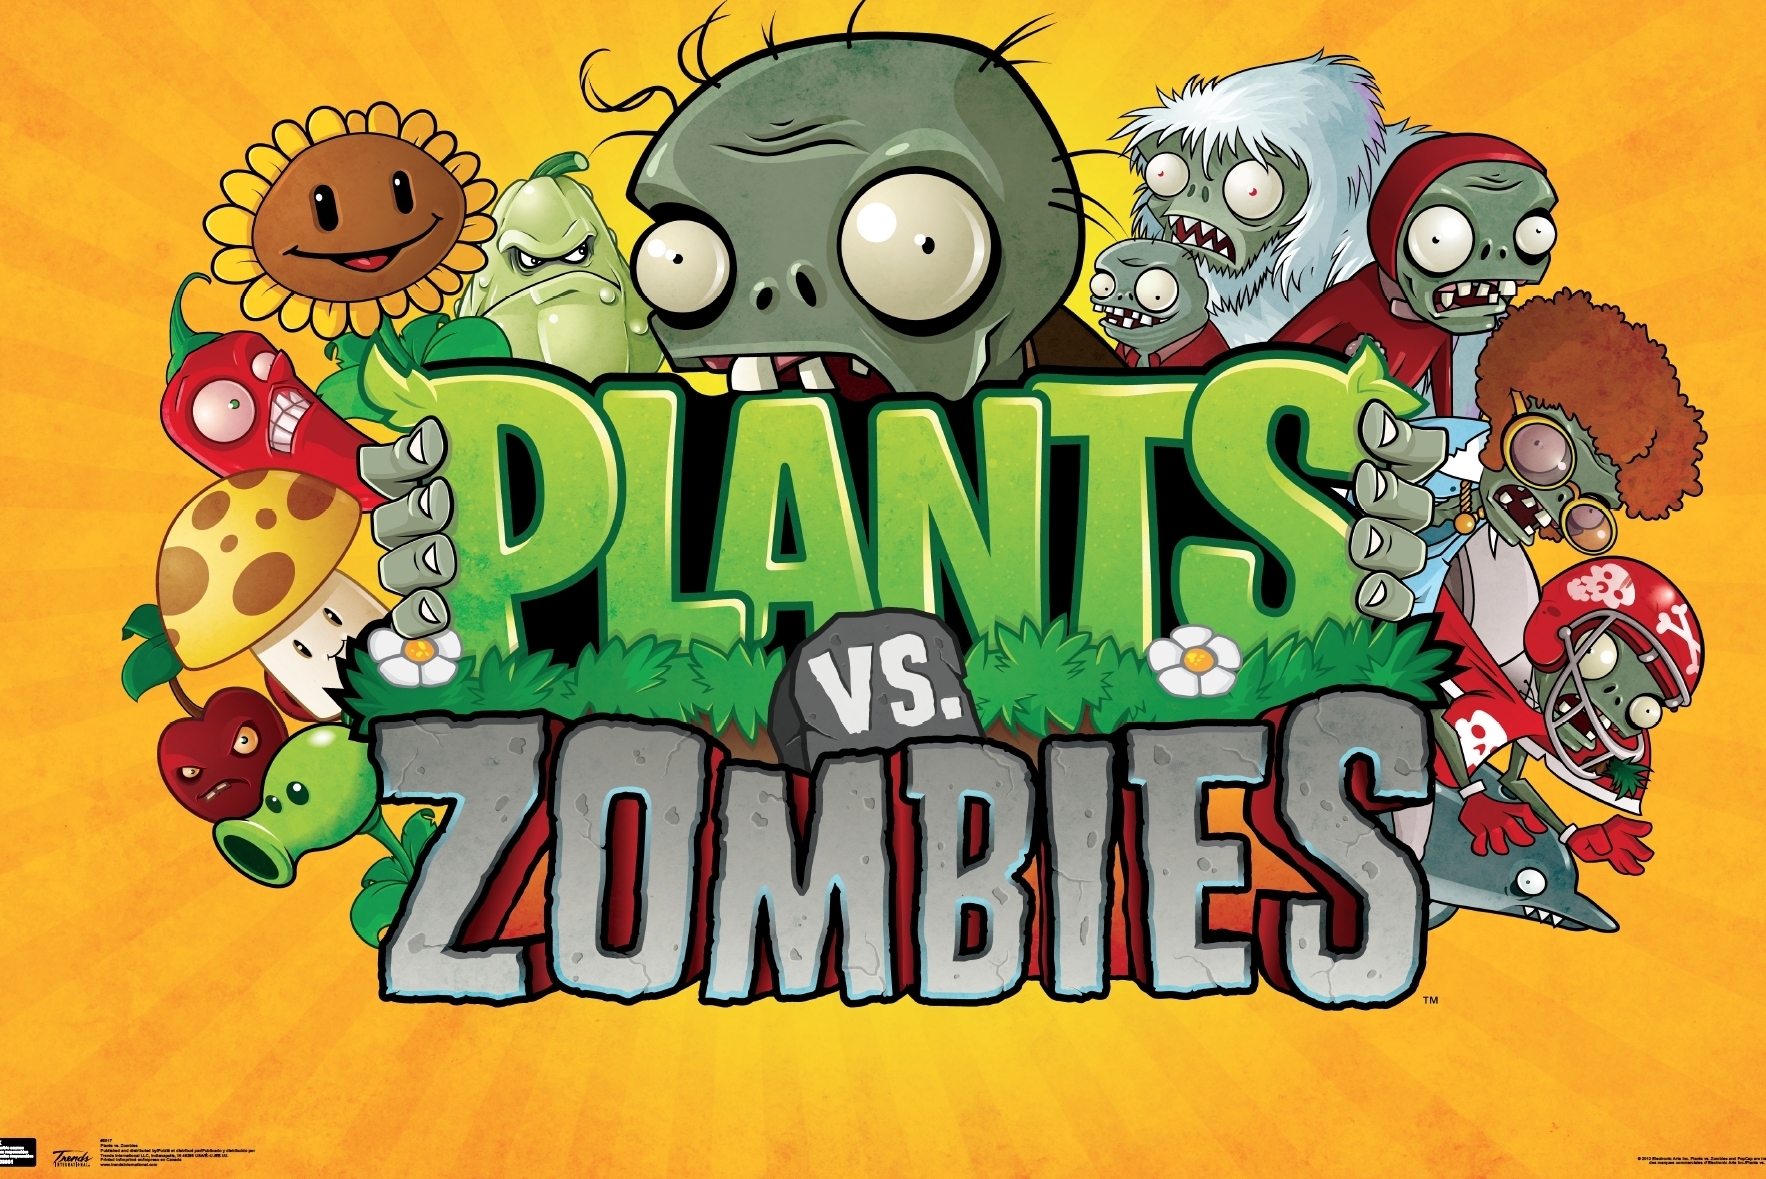 47+] Plants vs Zombies Wallpapers Desktop - WallpaperSafari